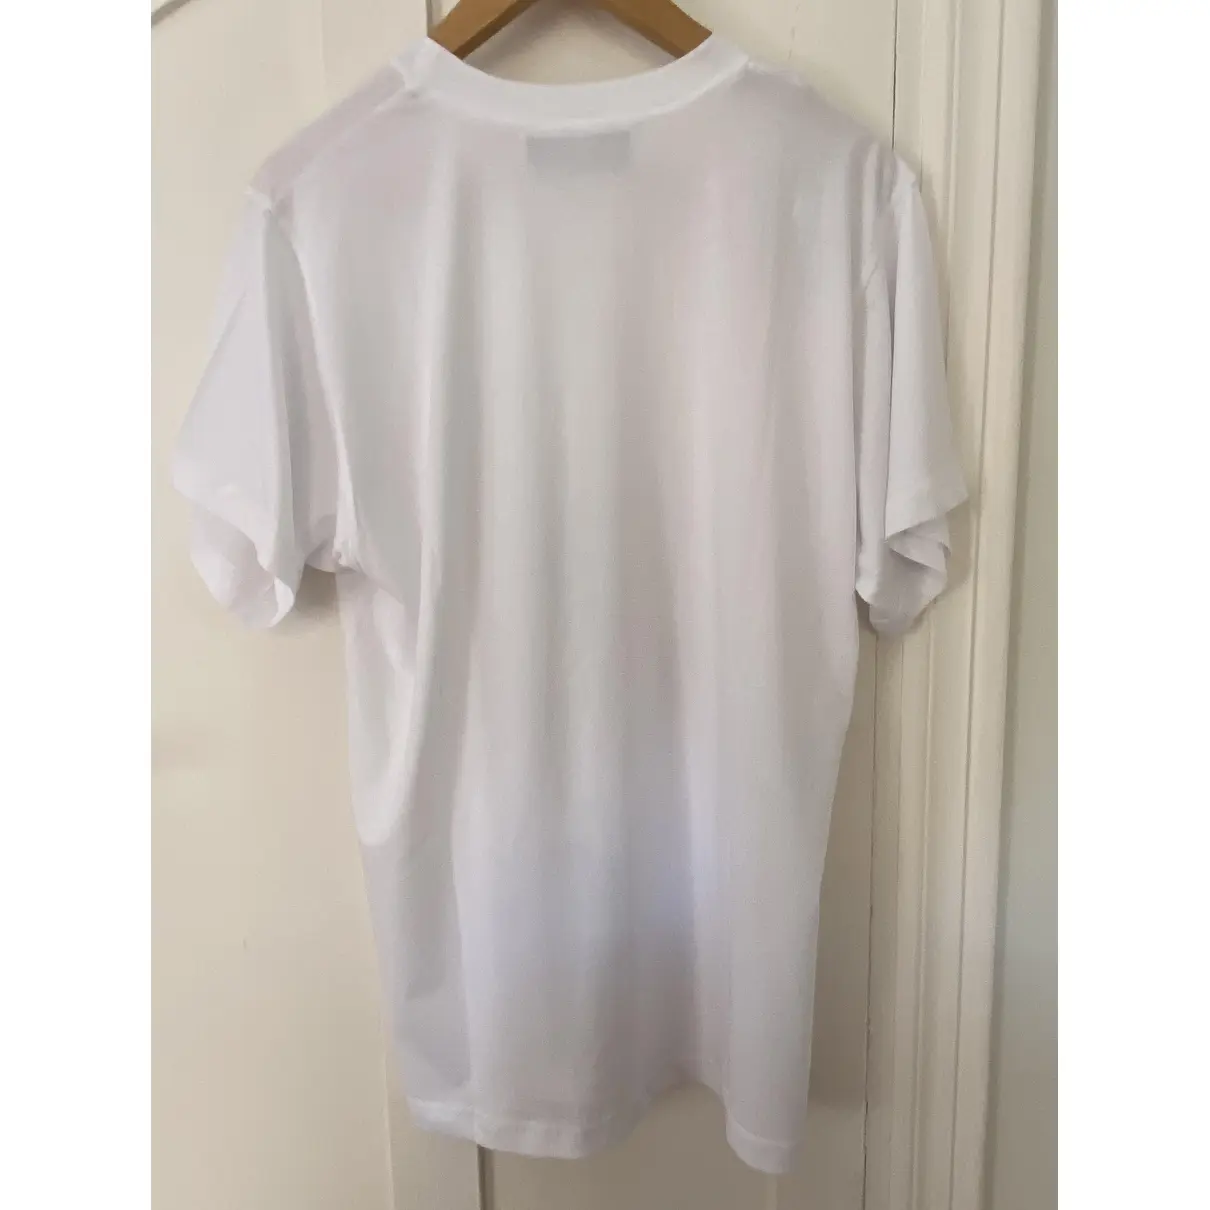 Jeremy Scott White Cotton T-shirt for sale